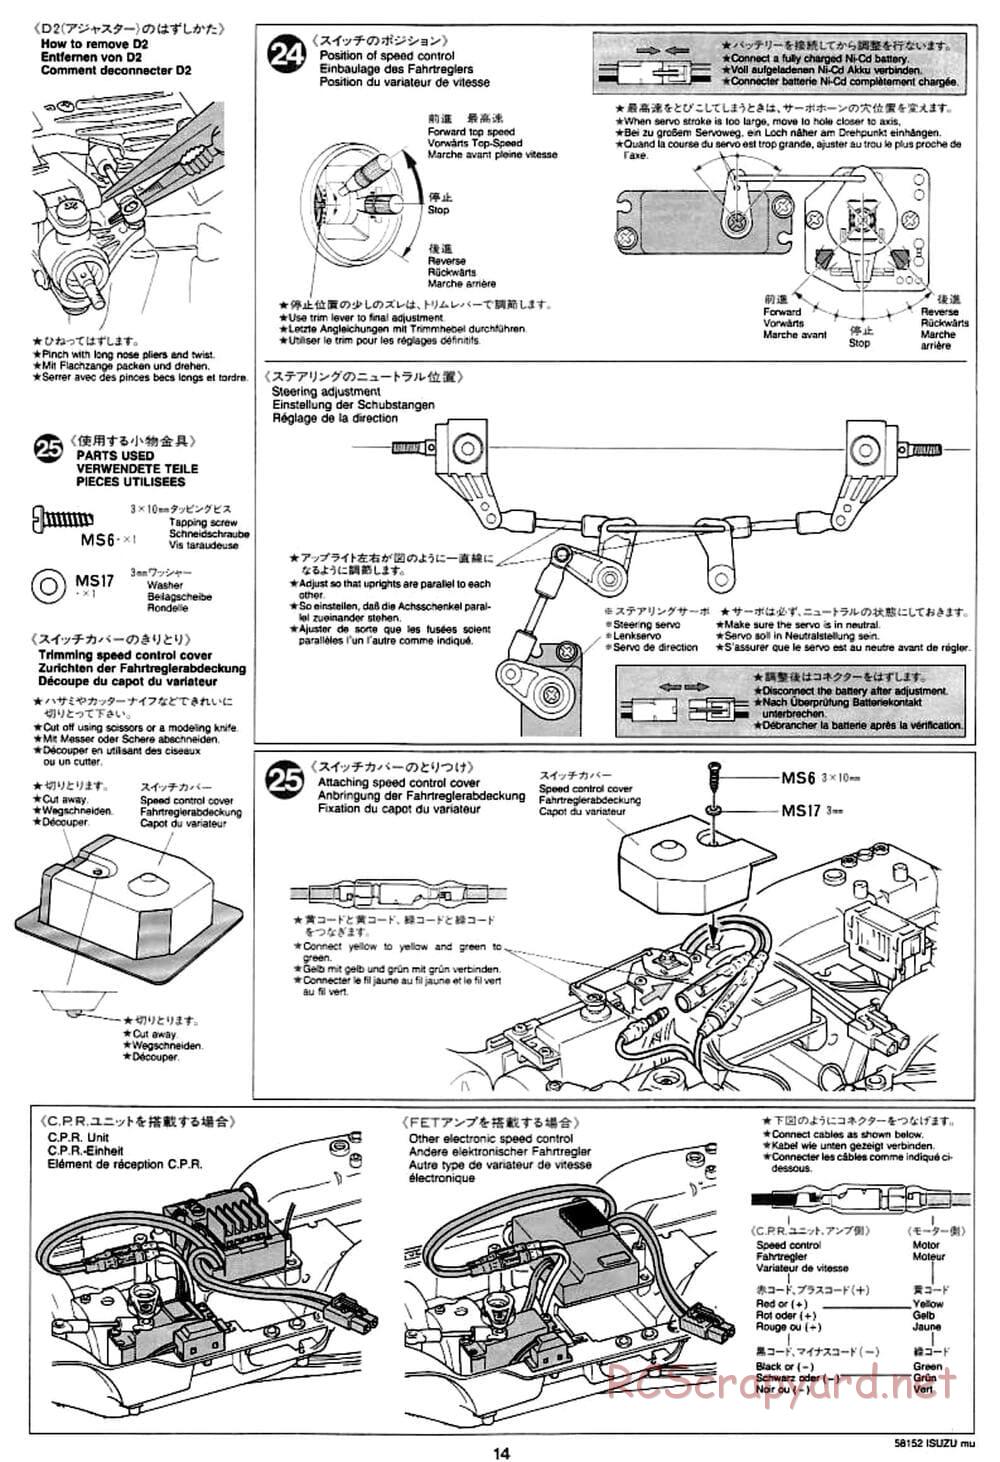 Tamiya - Isuzu Mu - CC-01 Chassis - Manual - Page 14